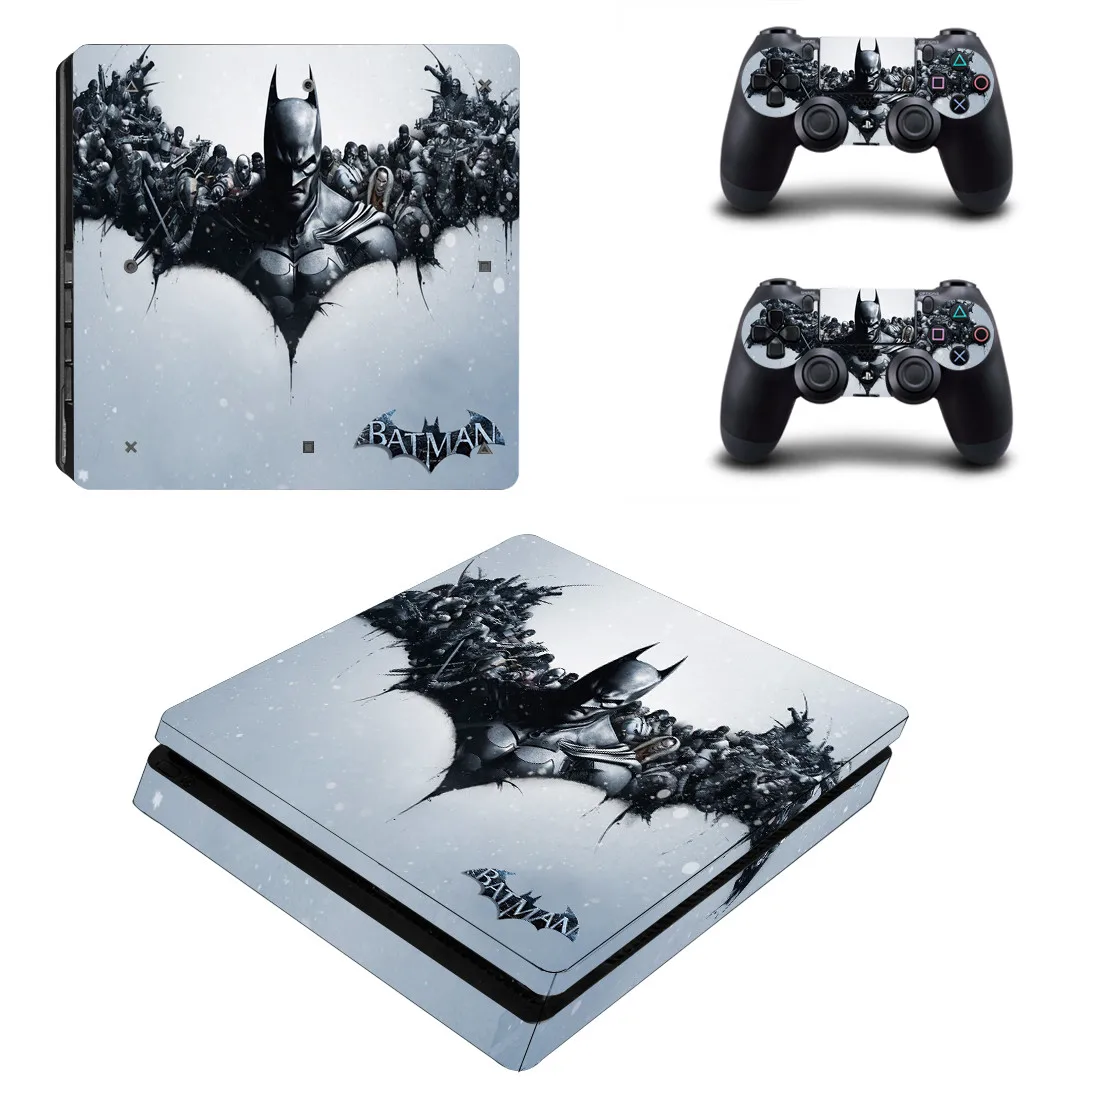 Бэтмен PS4 тонкая кожа Наклейка Обложка винил для Playstation 4 DuslShock 4 консоль и контроллер PS4 тонкая кожа Наклейка